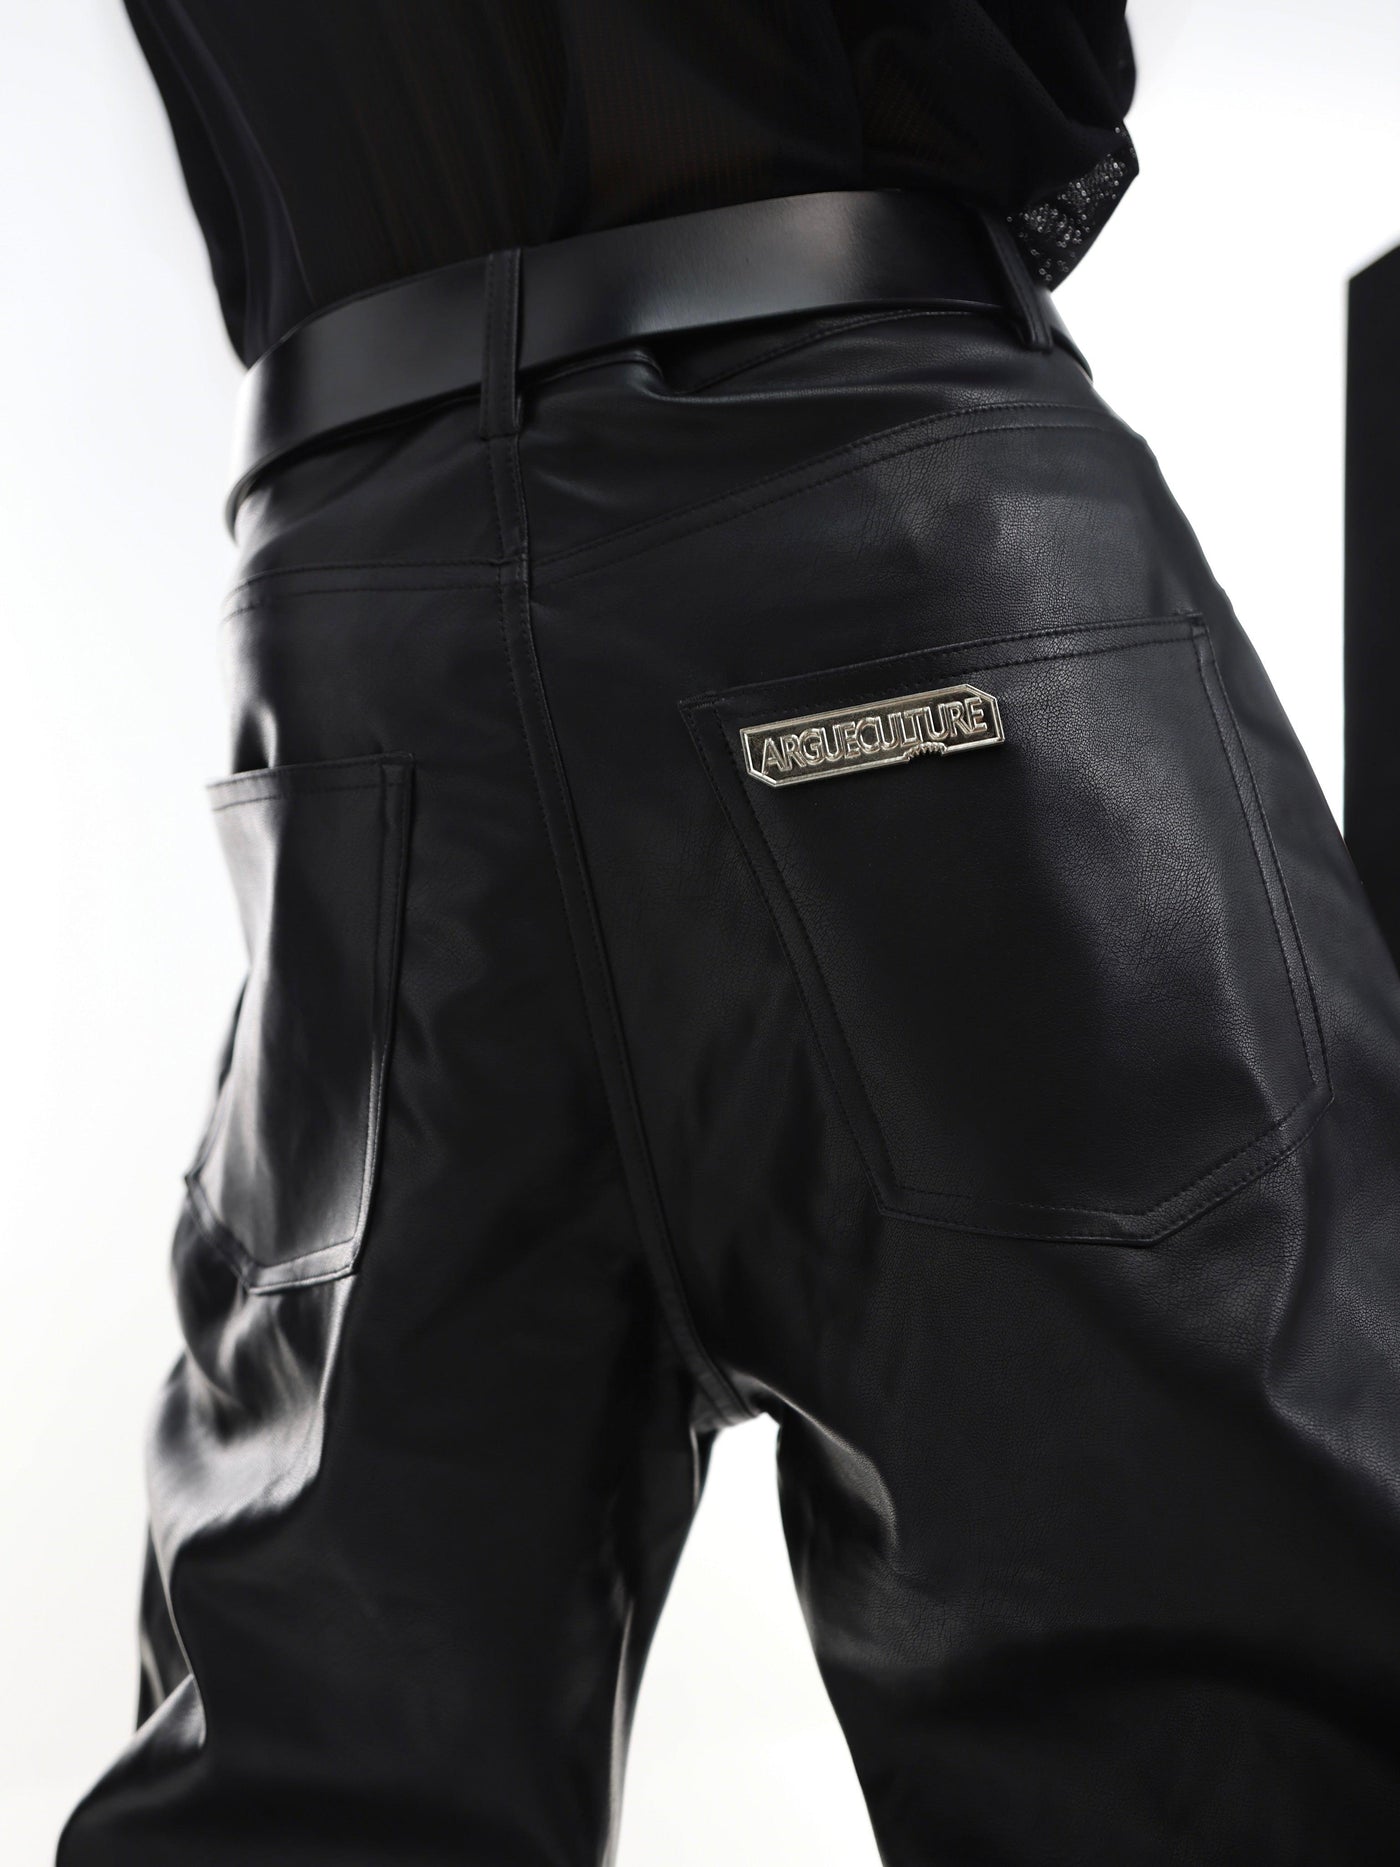 Argue Culture Metal Logo Back Textured Leather Pants Korean Street Fashion Pants By Argue Culture Shop Online at OH Vault